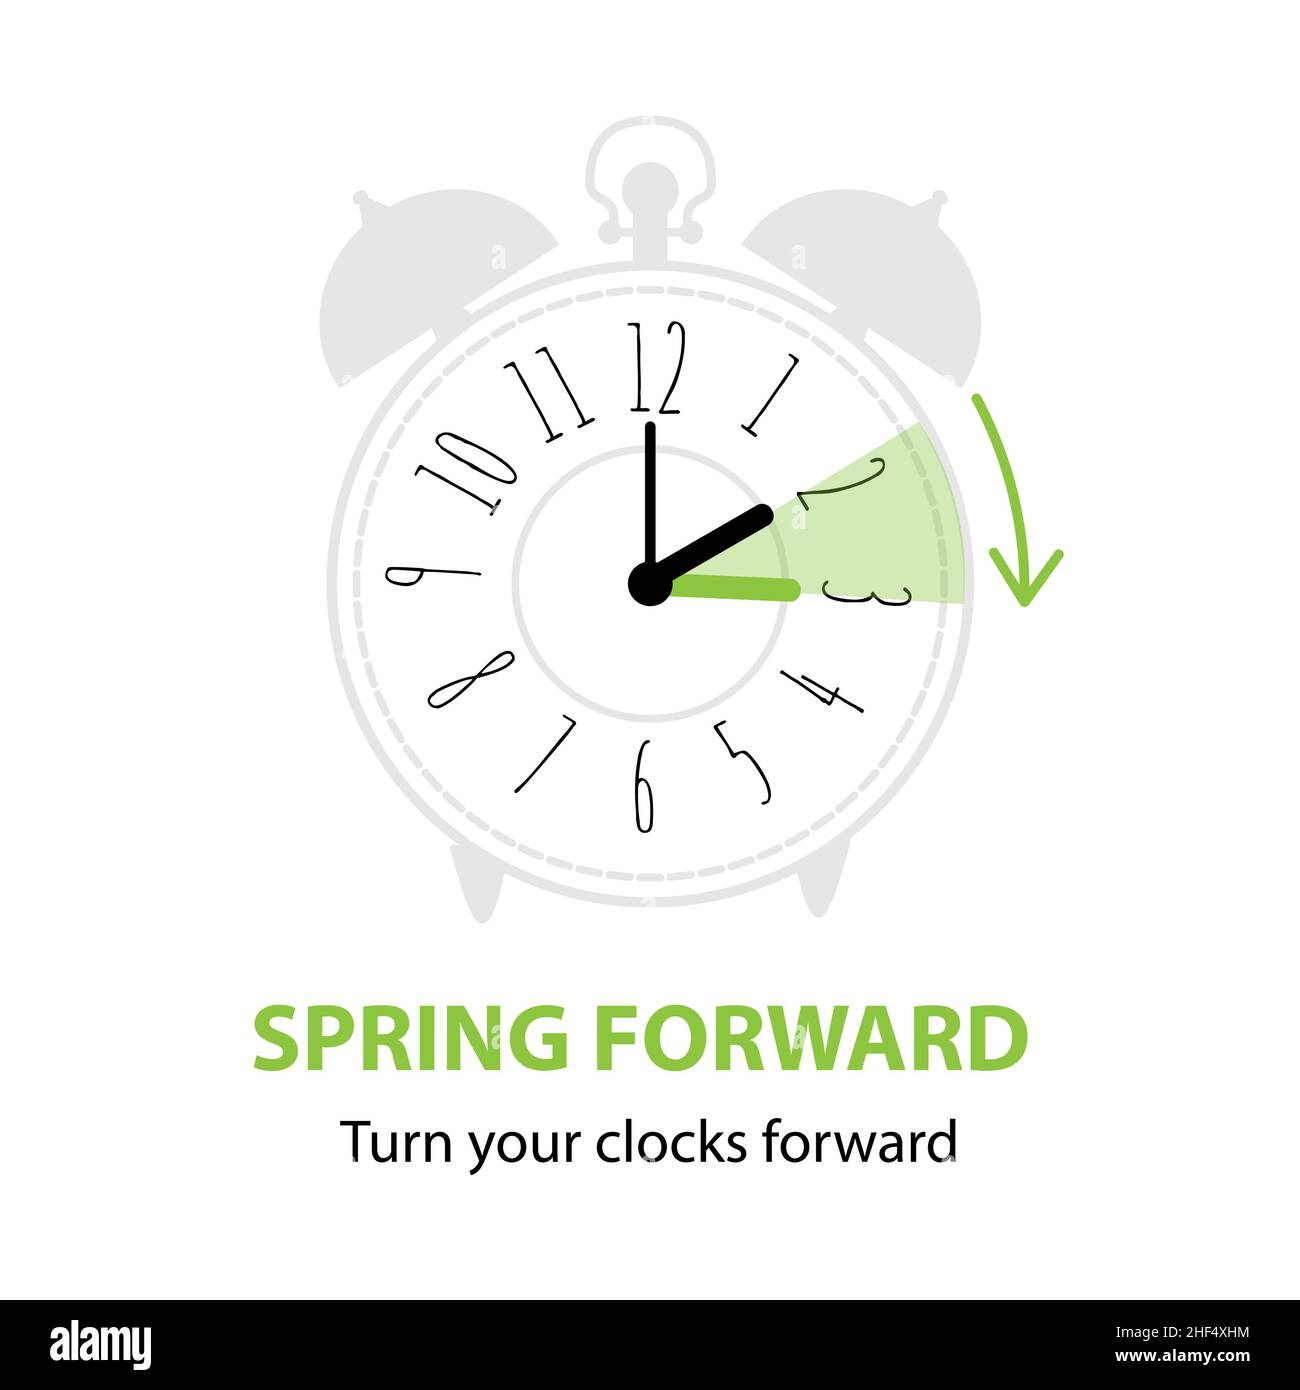 Sommerzeit. Spring Forward Konzept mit grafischem Wecker und Zeitplan, um die Uhren im Frühjahr eine Stunde nach vorne zu stellen. Vektorgrafiken Stock Vektor